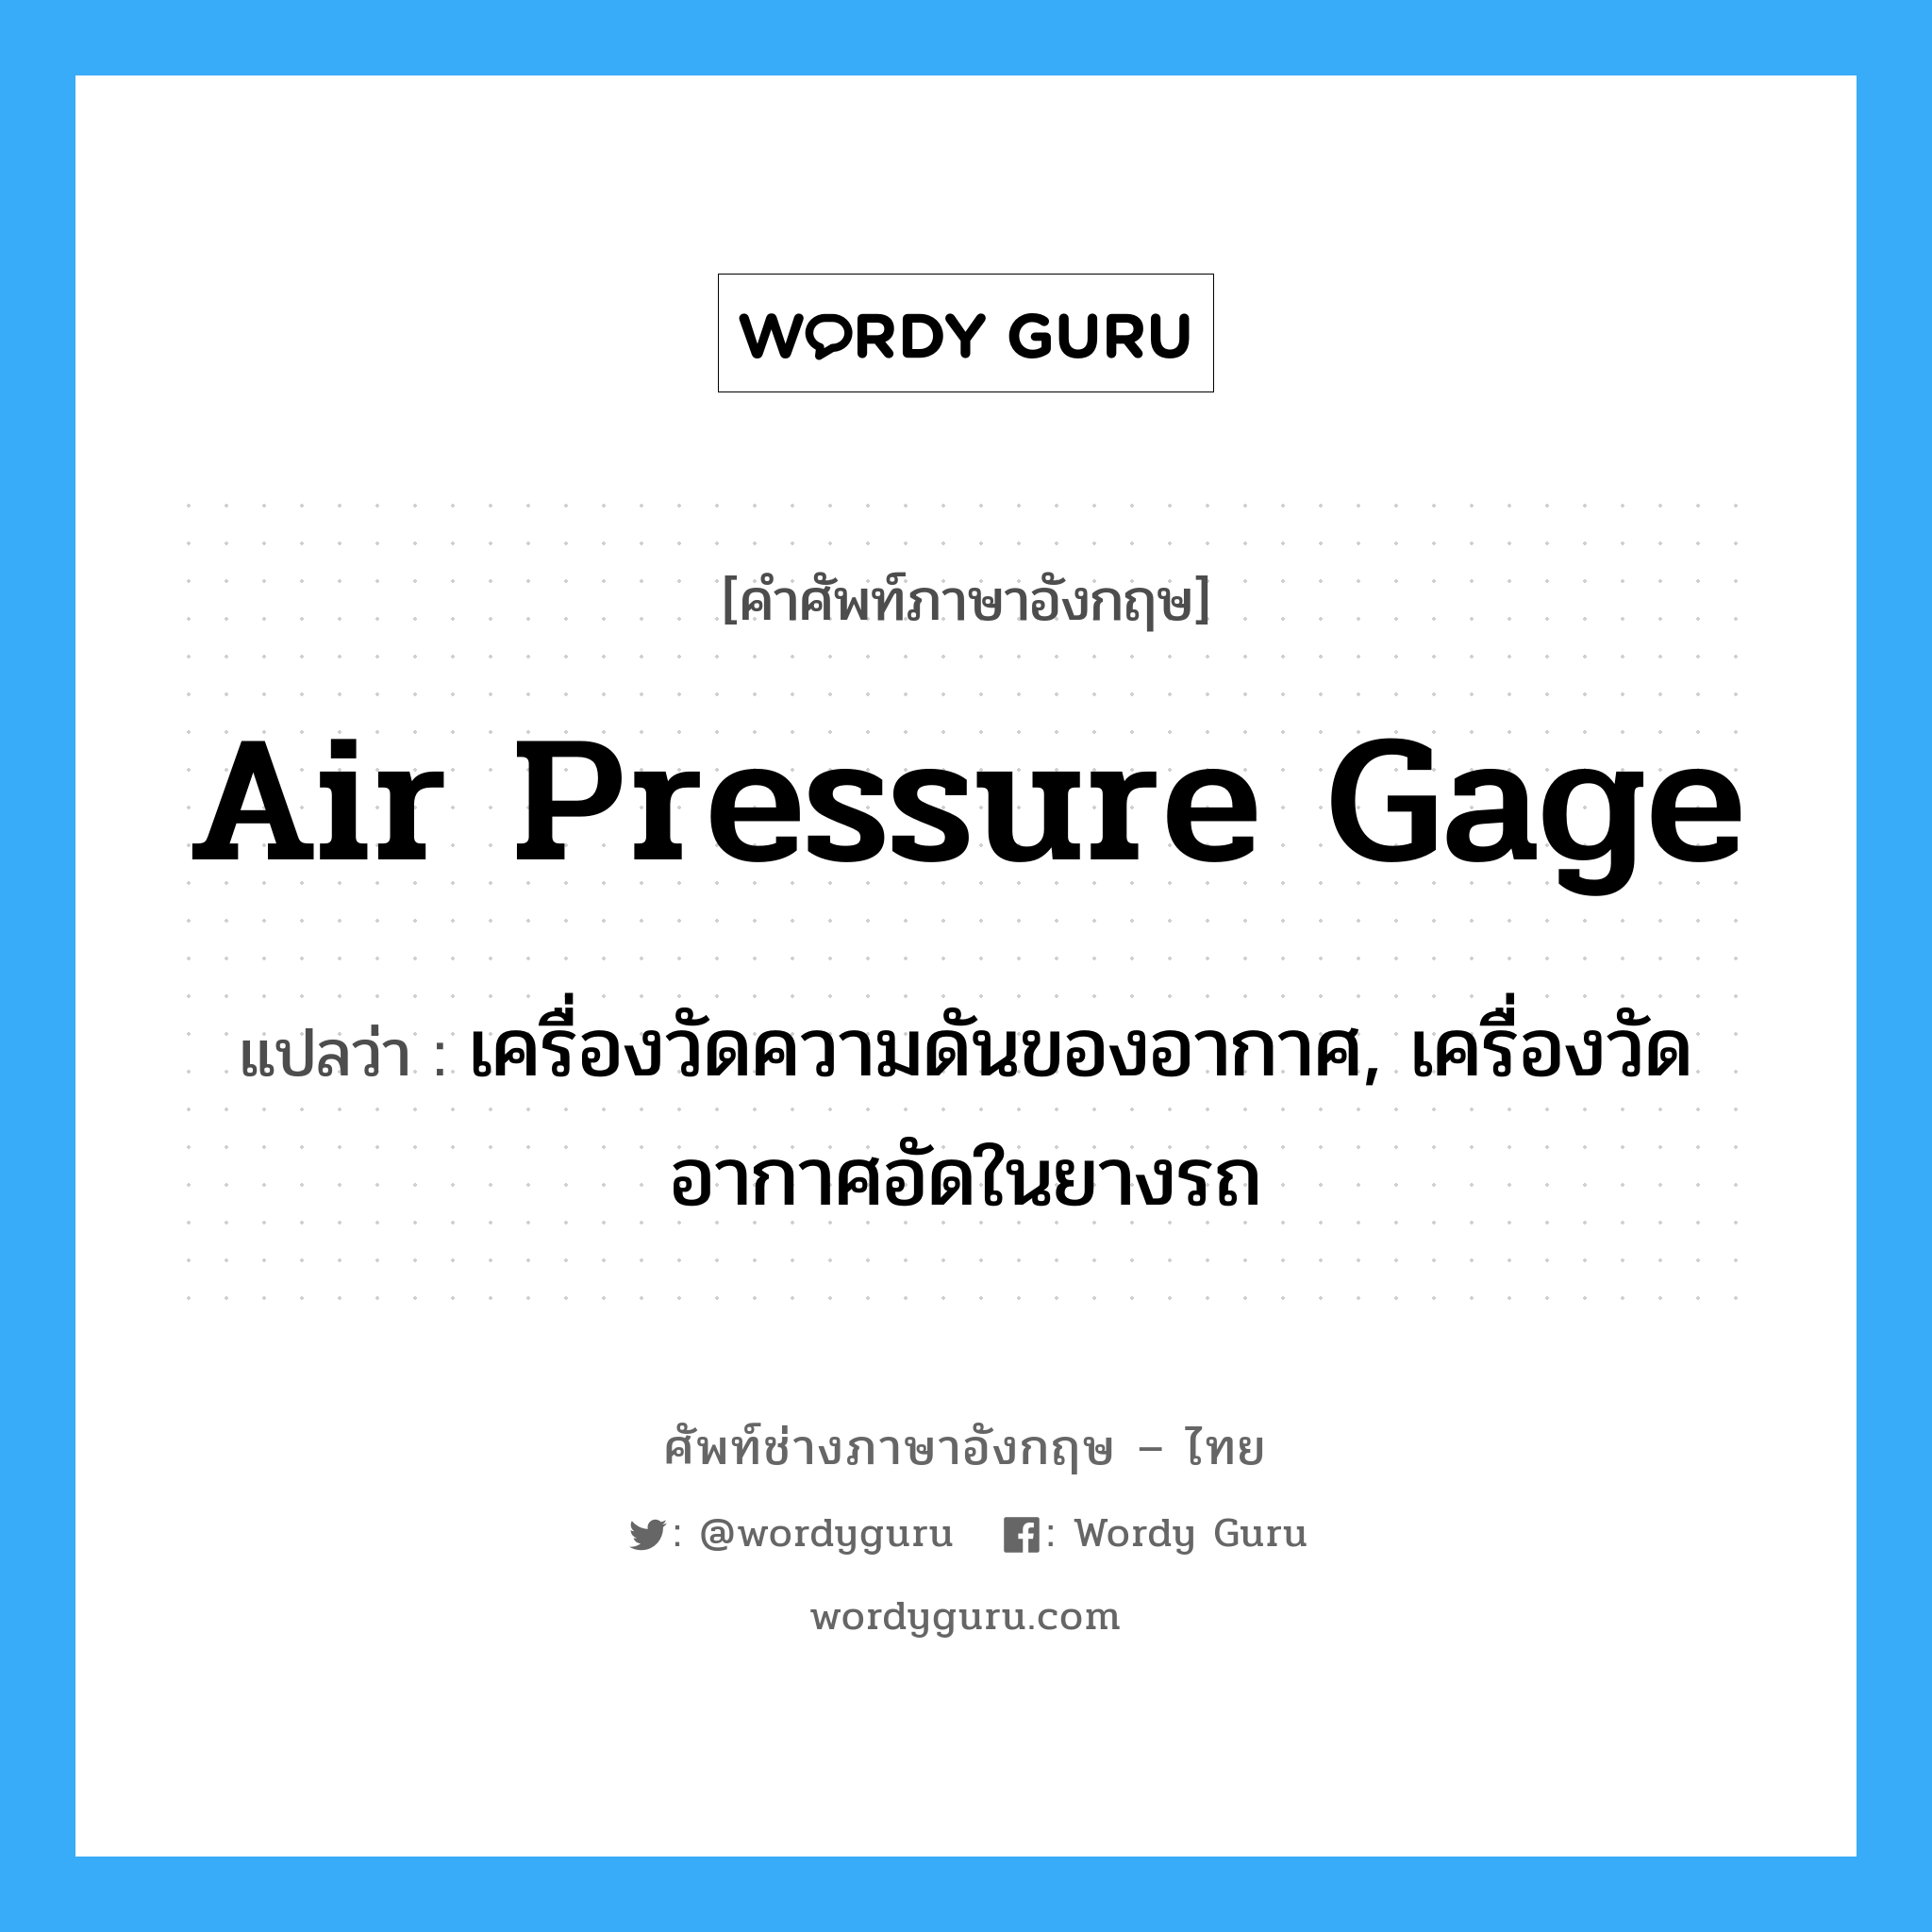 air pressure gage แปลว่า?, คำศัพท์ช่างภาษาอังกฤษ - ไทย air pressure gage คำศัพท์ภาษาอังกฤษ air pressure gage แปลว่า เครื่องวัดความดันของอากาศ, เครื่องวัดอากาศอัดในยางรถ